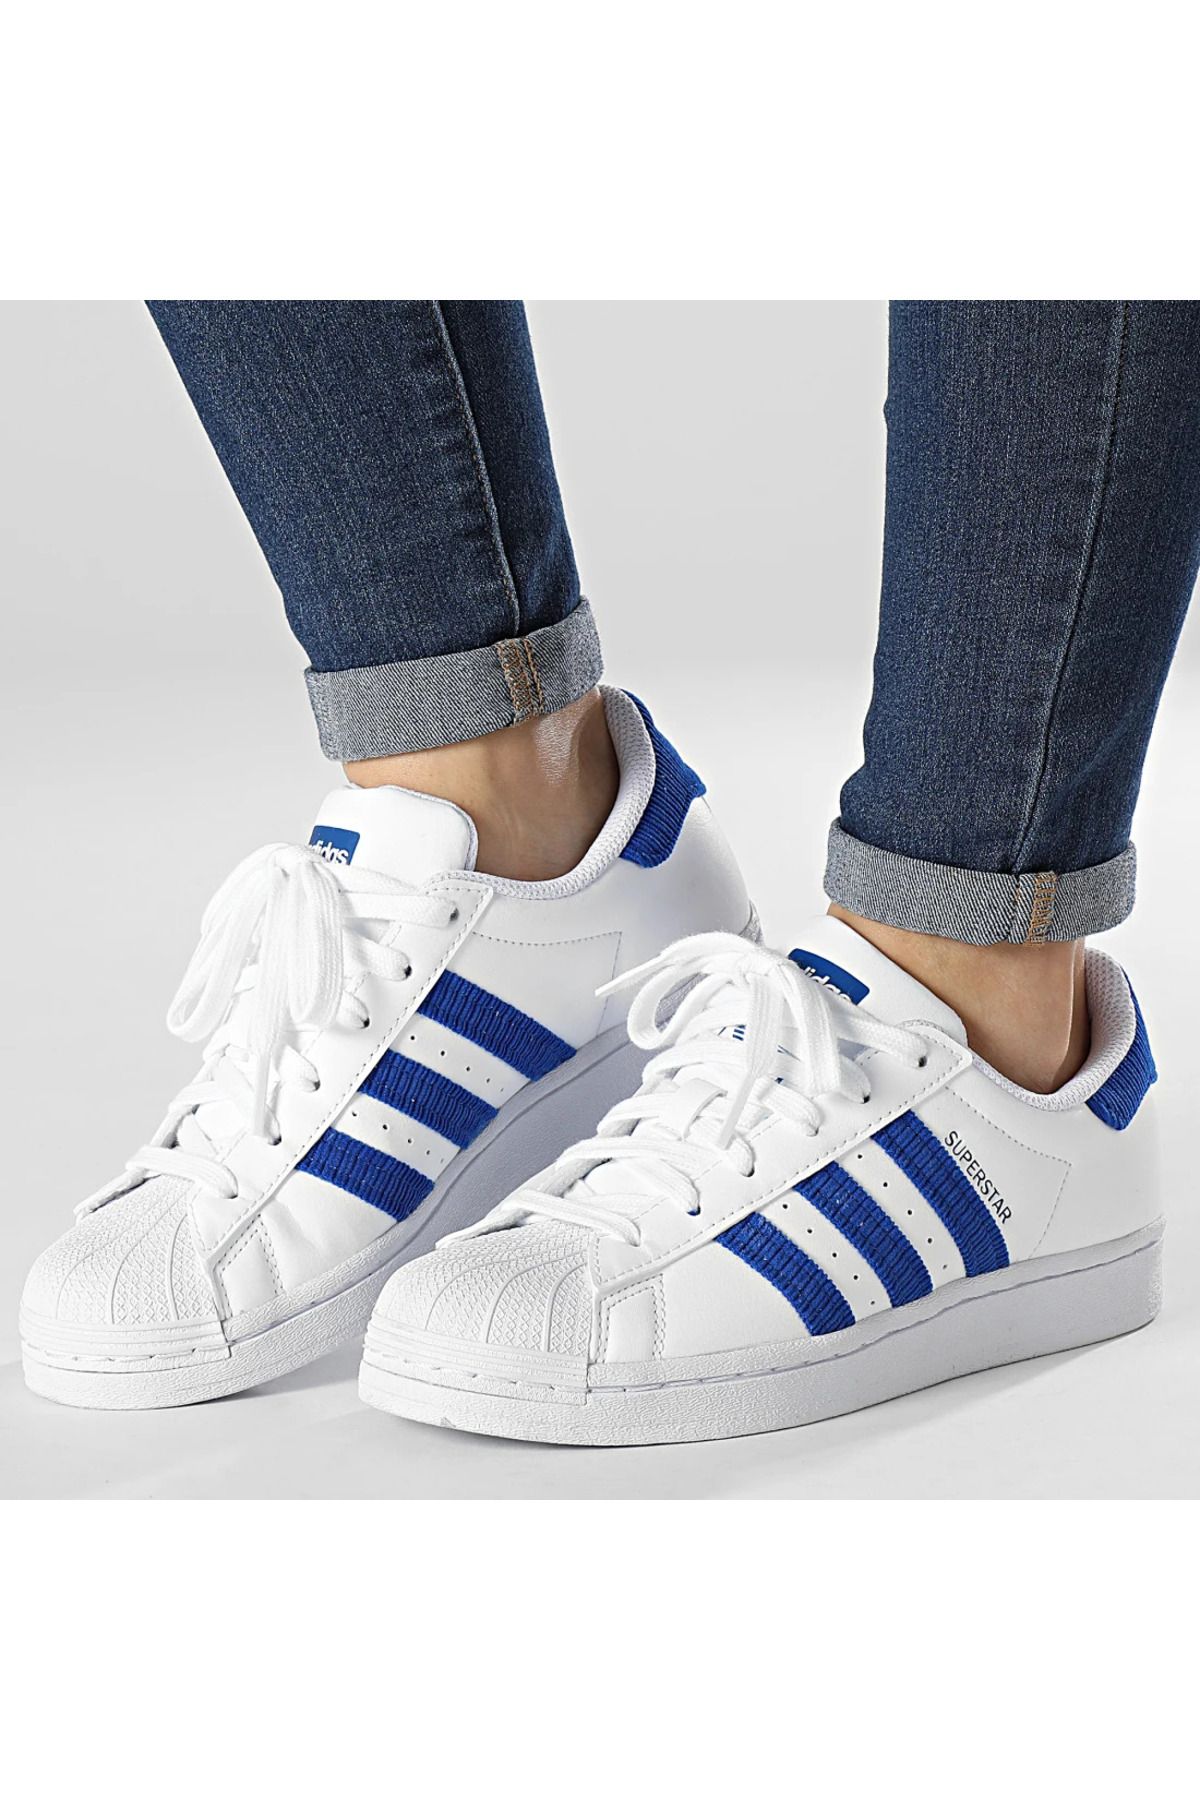 adidas Superstar Günlük Ayakkabı Sneaker Beyaz